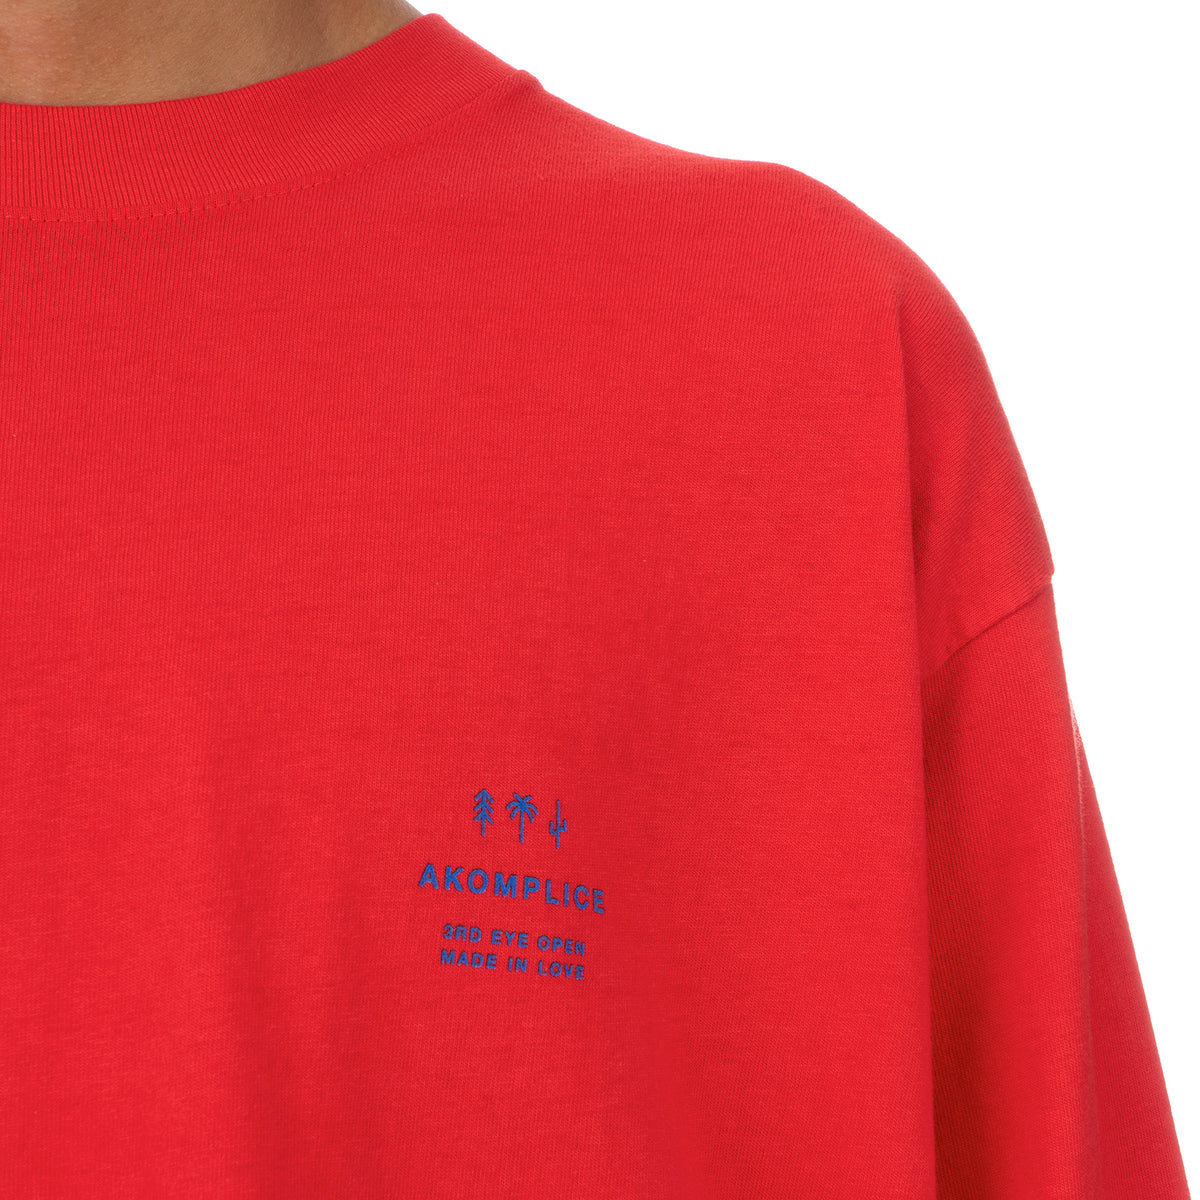 Akomplice | We Are Ocean L/S T-Shirt Tomato - Concrete